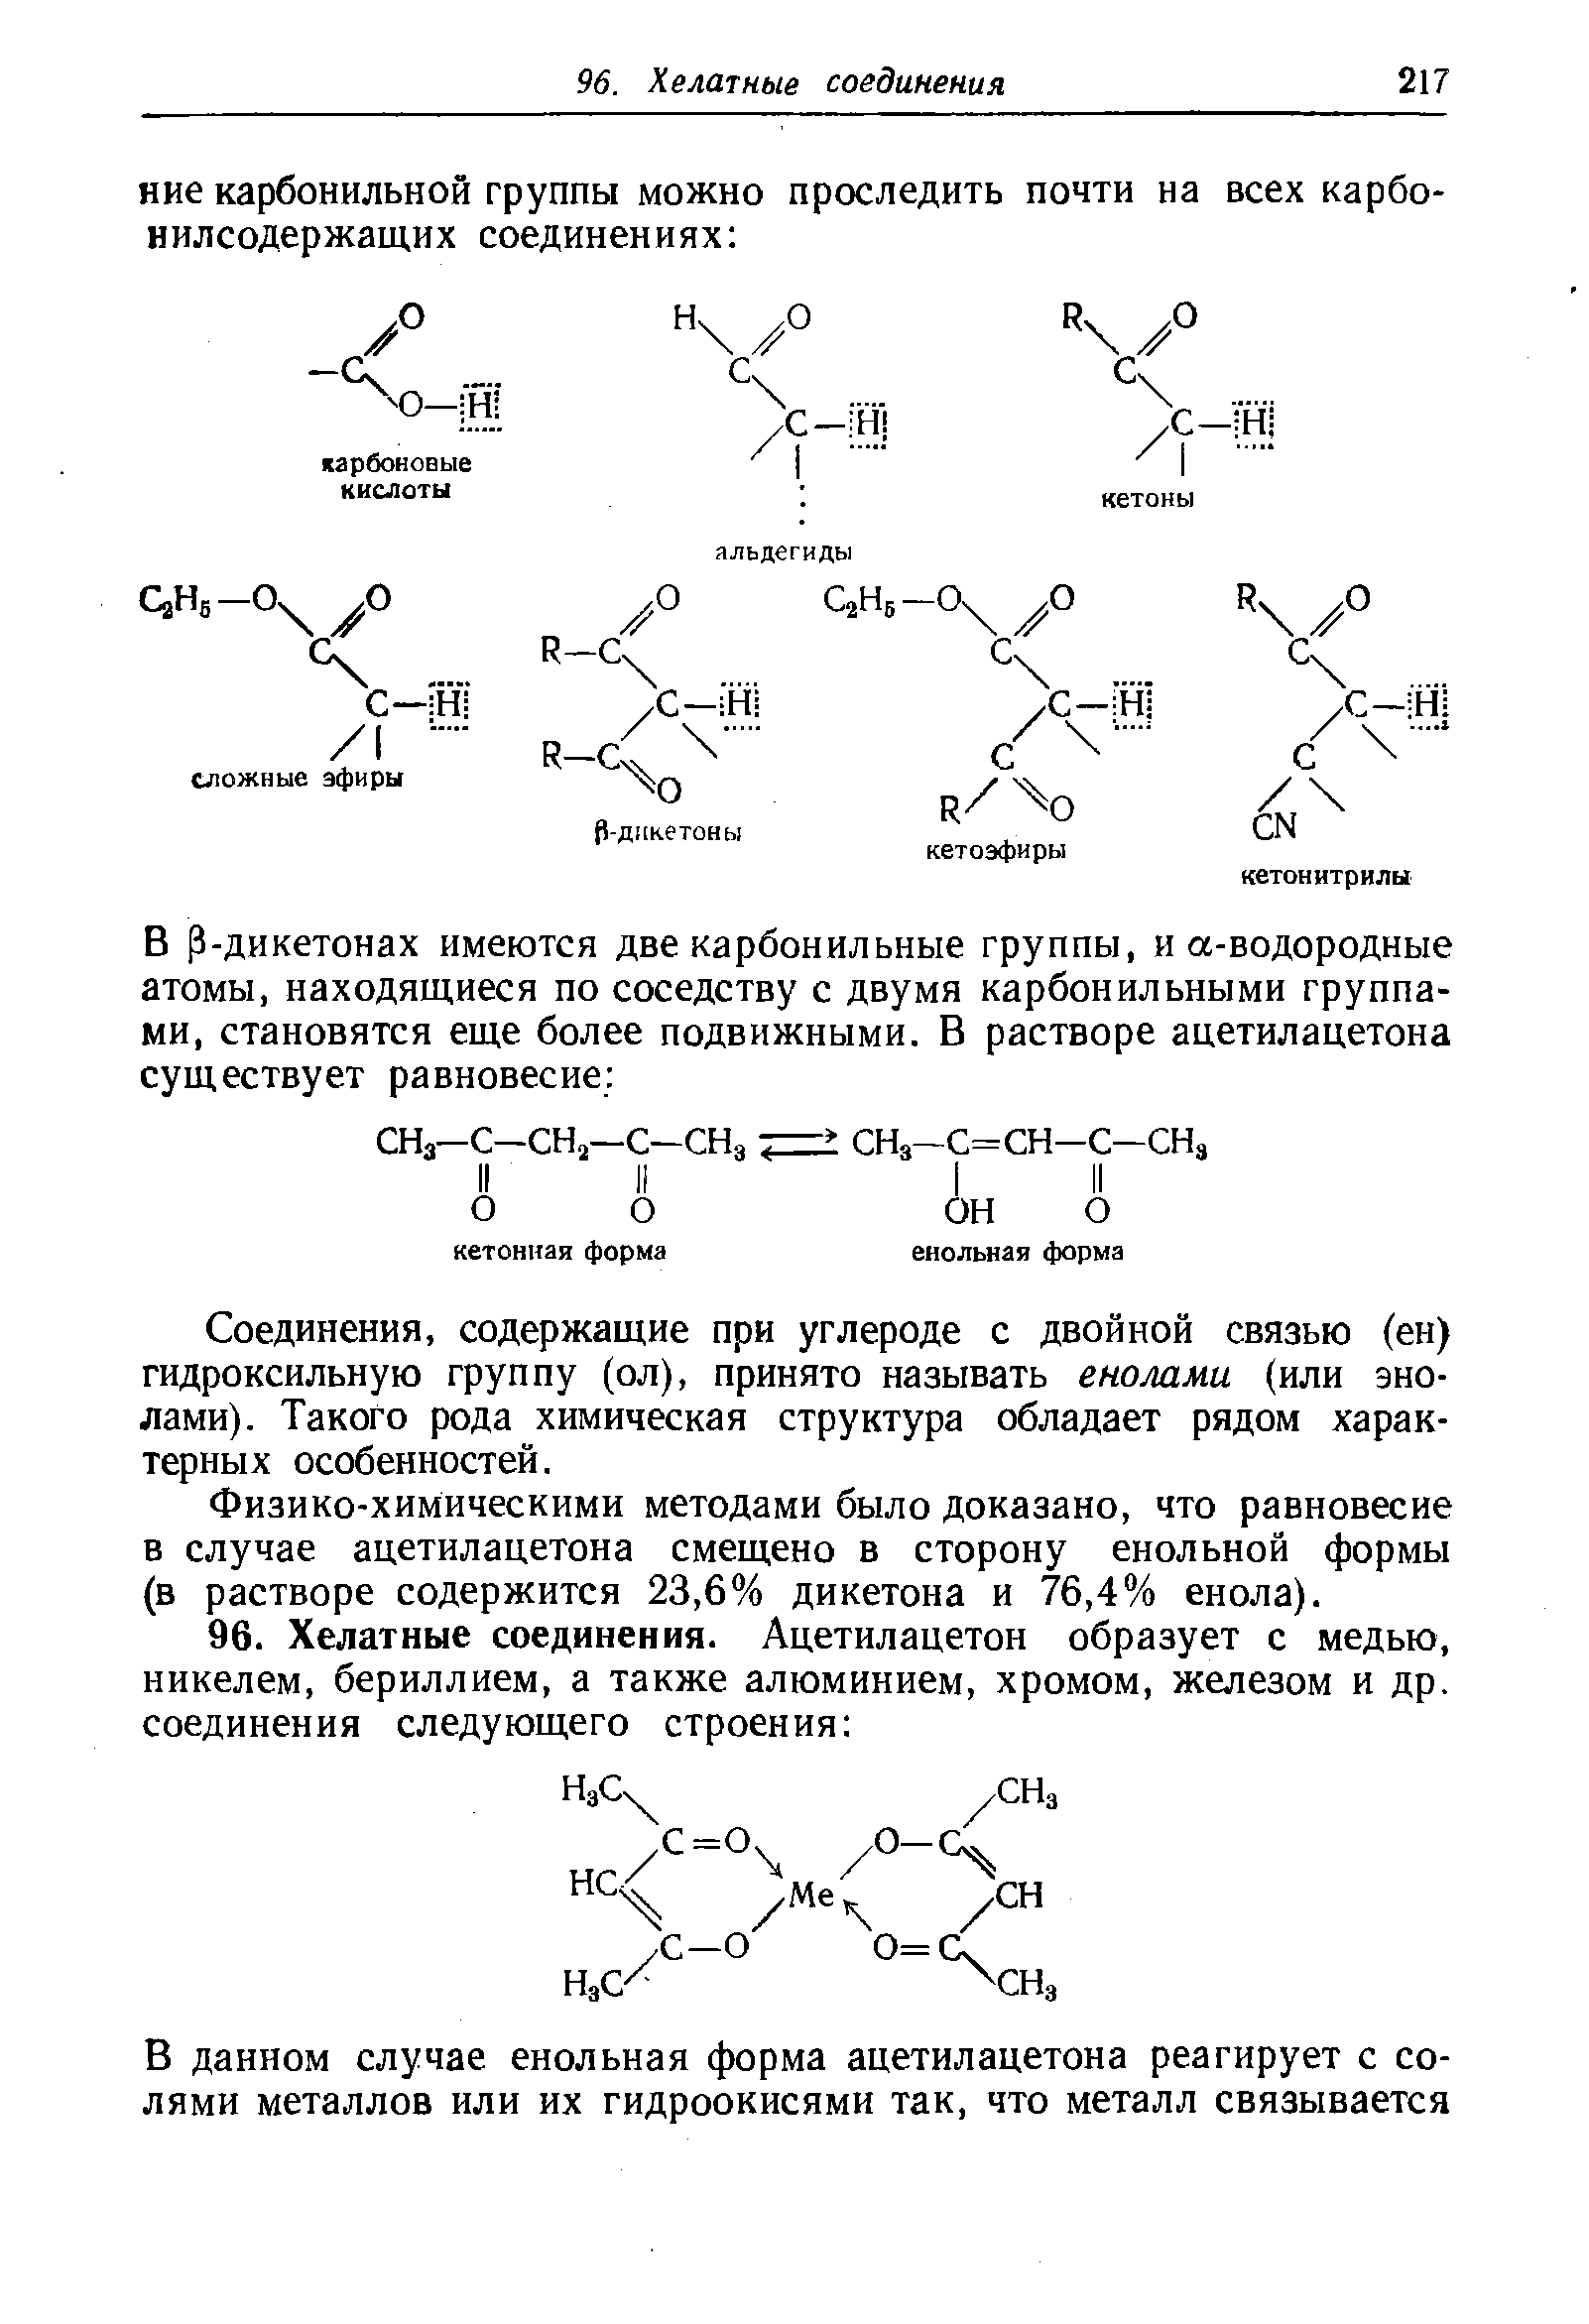 Соединения, содержащие при углероде с двойной связью (ен) гидроксильную группу (ол), принято называть еношми (или эно-лами). Такого рода химическая структура обладает рядом характерных особенностей.